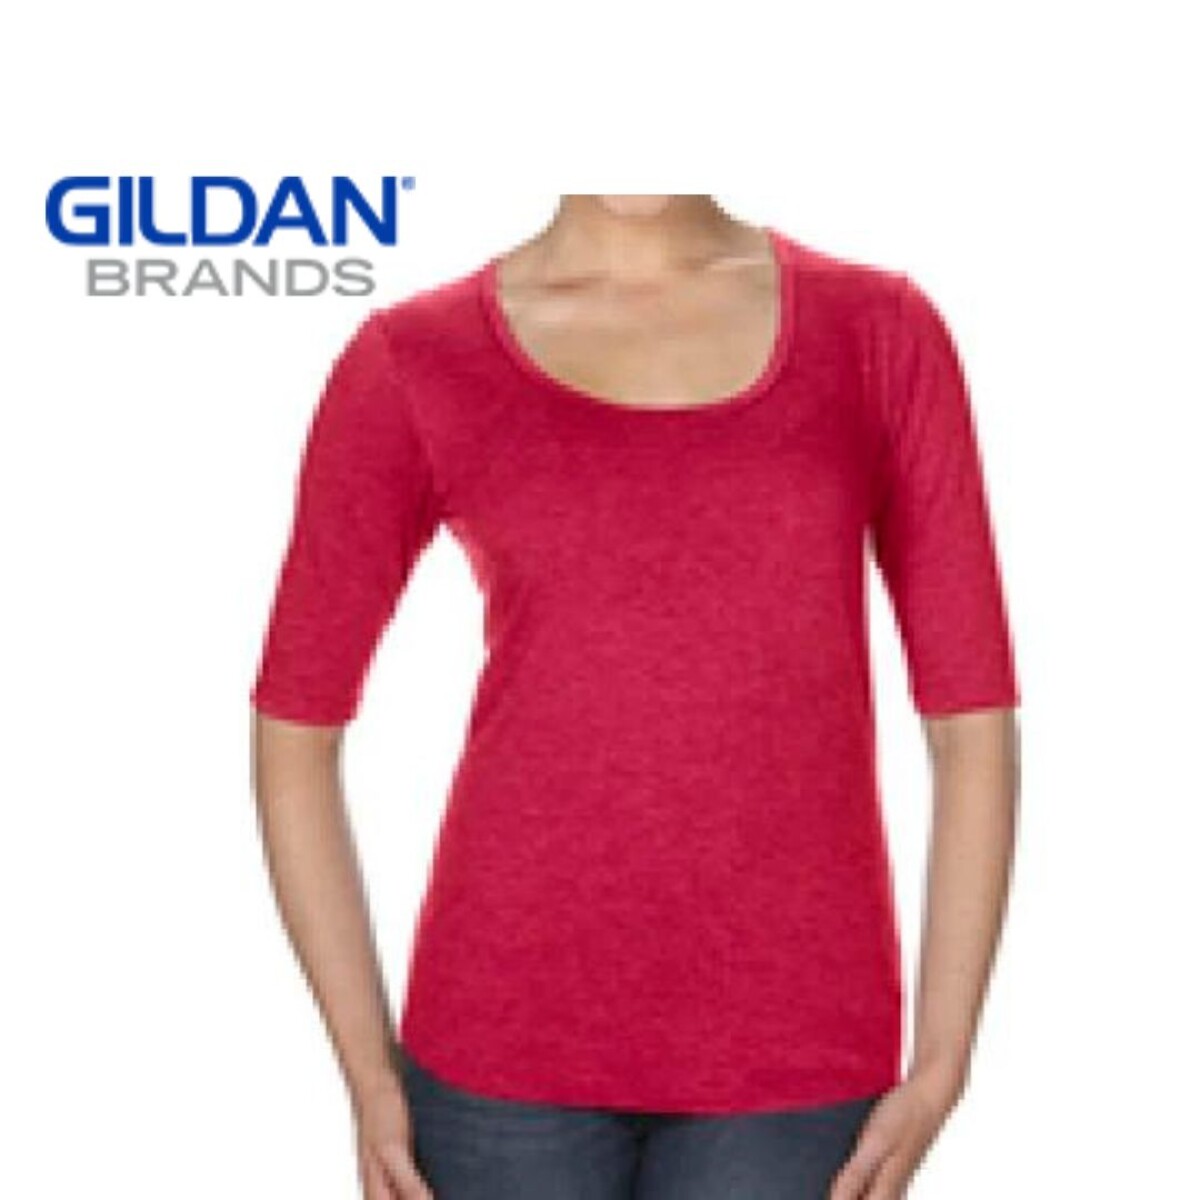 Camiseta Gildan Manga 3/4 - Rojo 